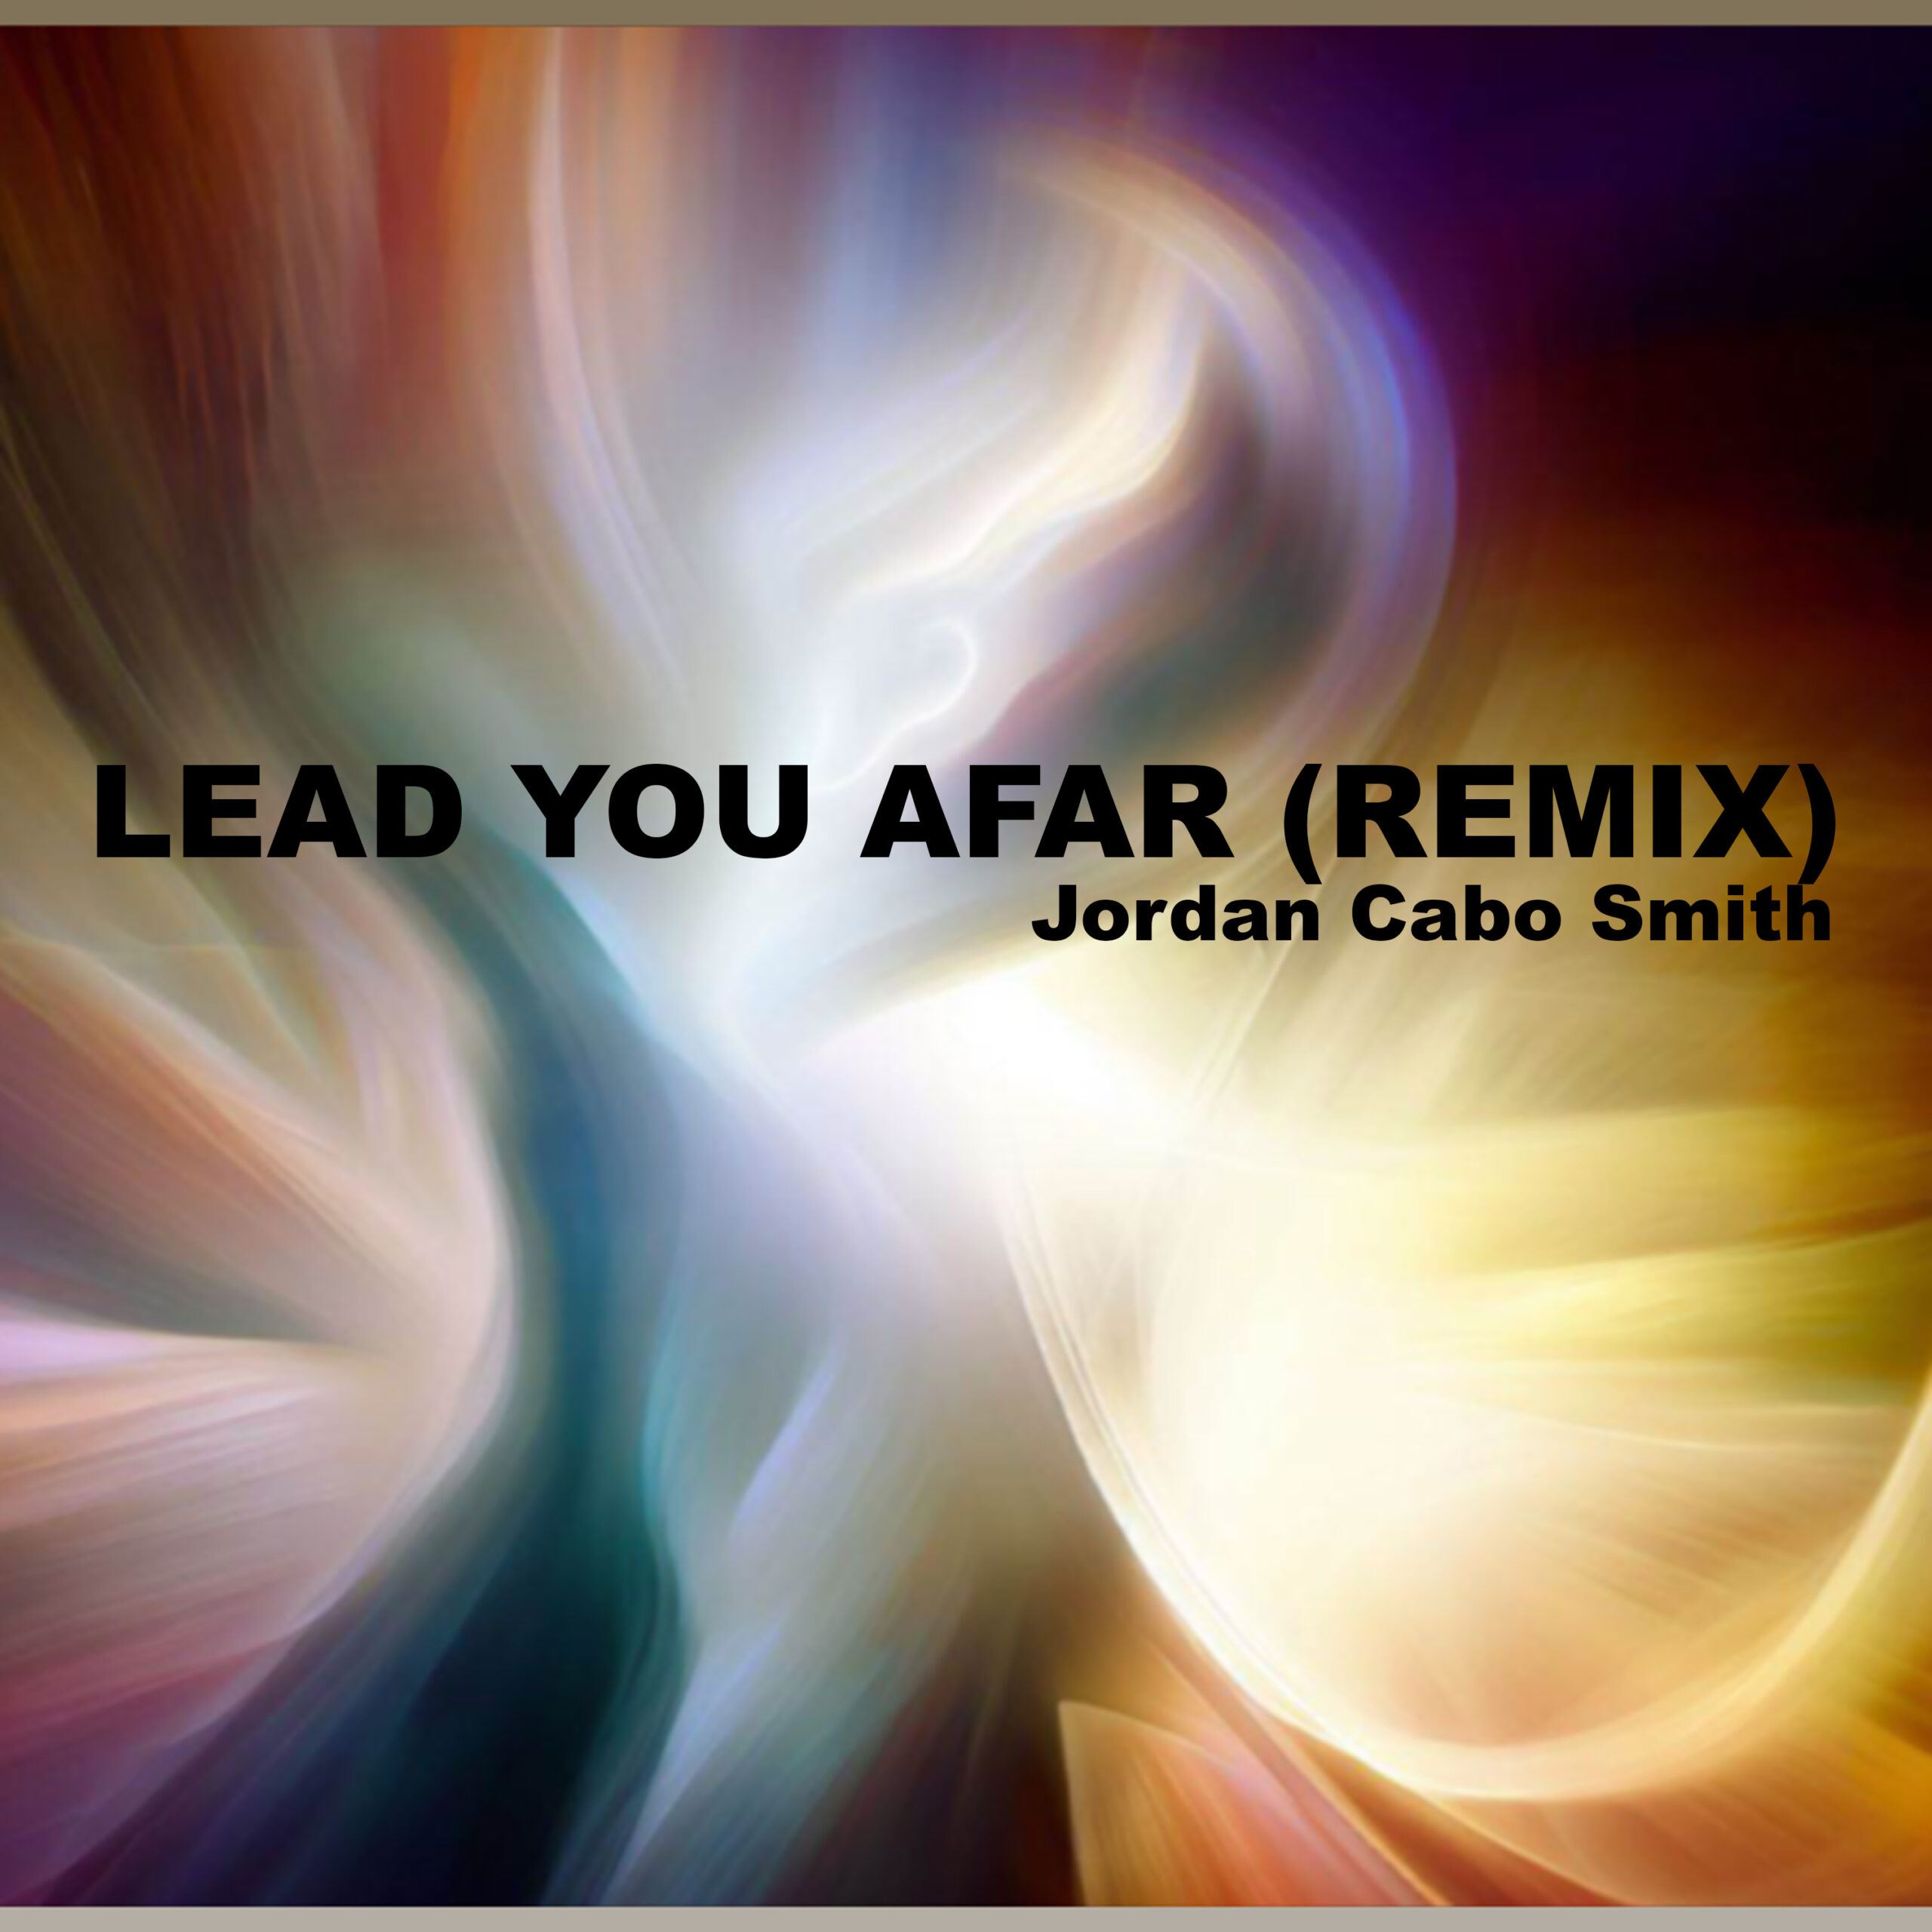 Lead You Afar (Remix)